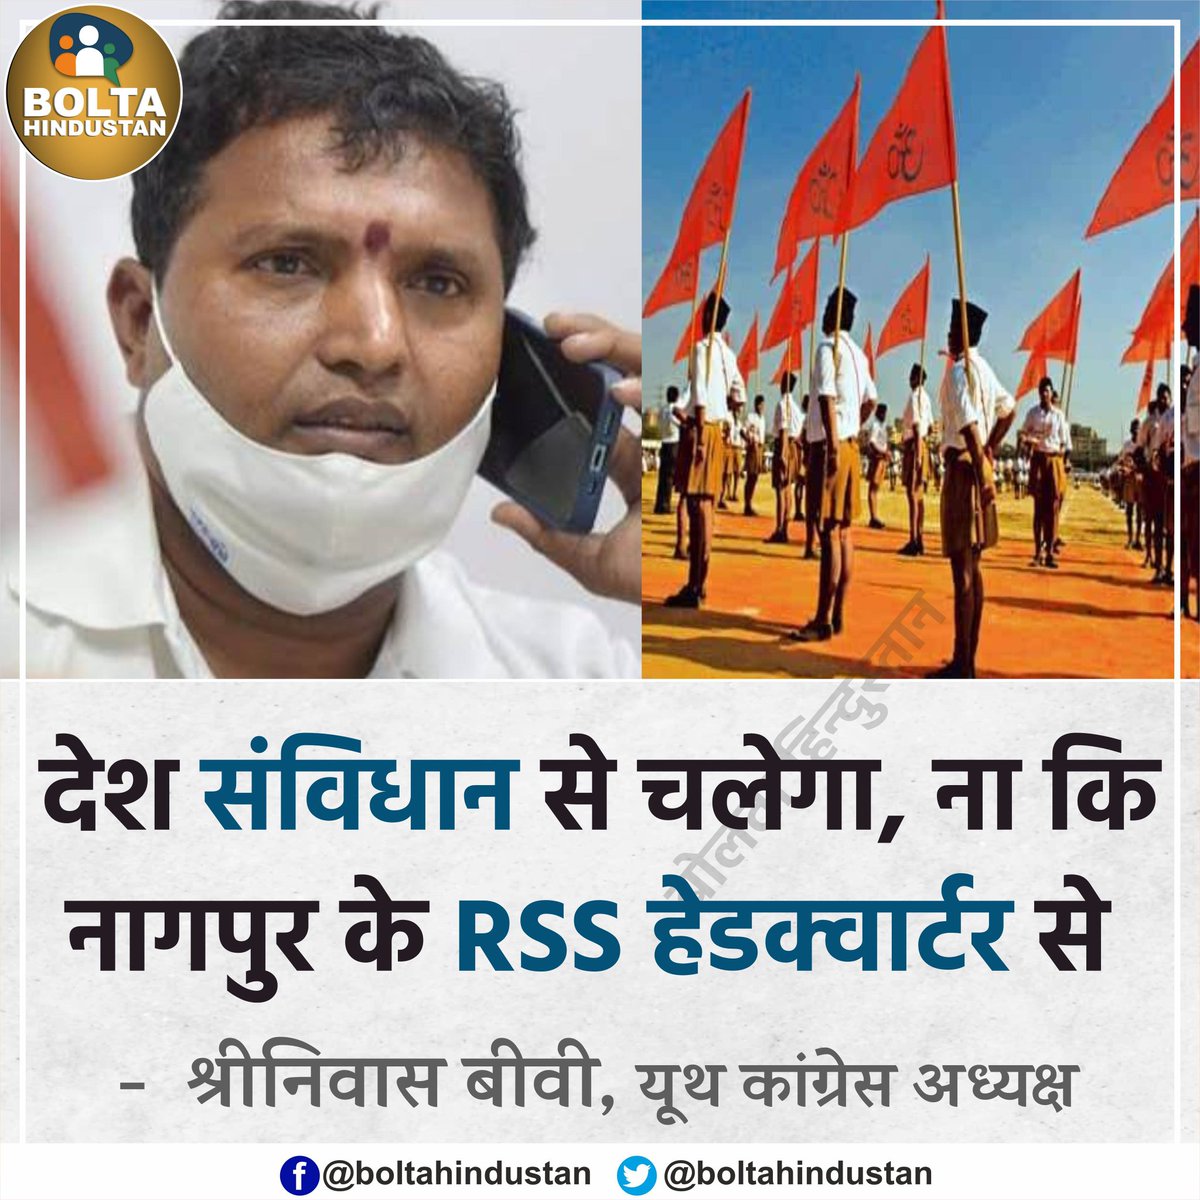 70 साल तक देश पर राज करने वाले आज RSS पर सवाल खड़े करते हैं! @INCIndia